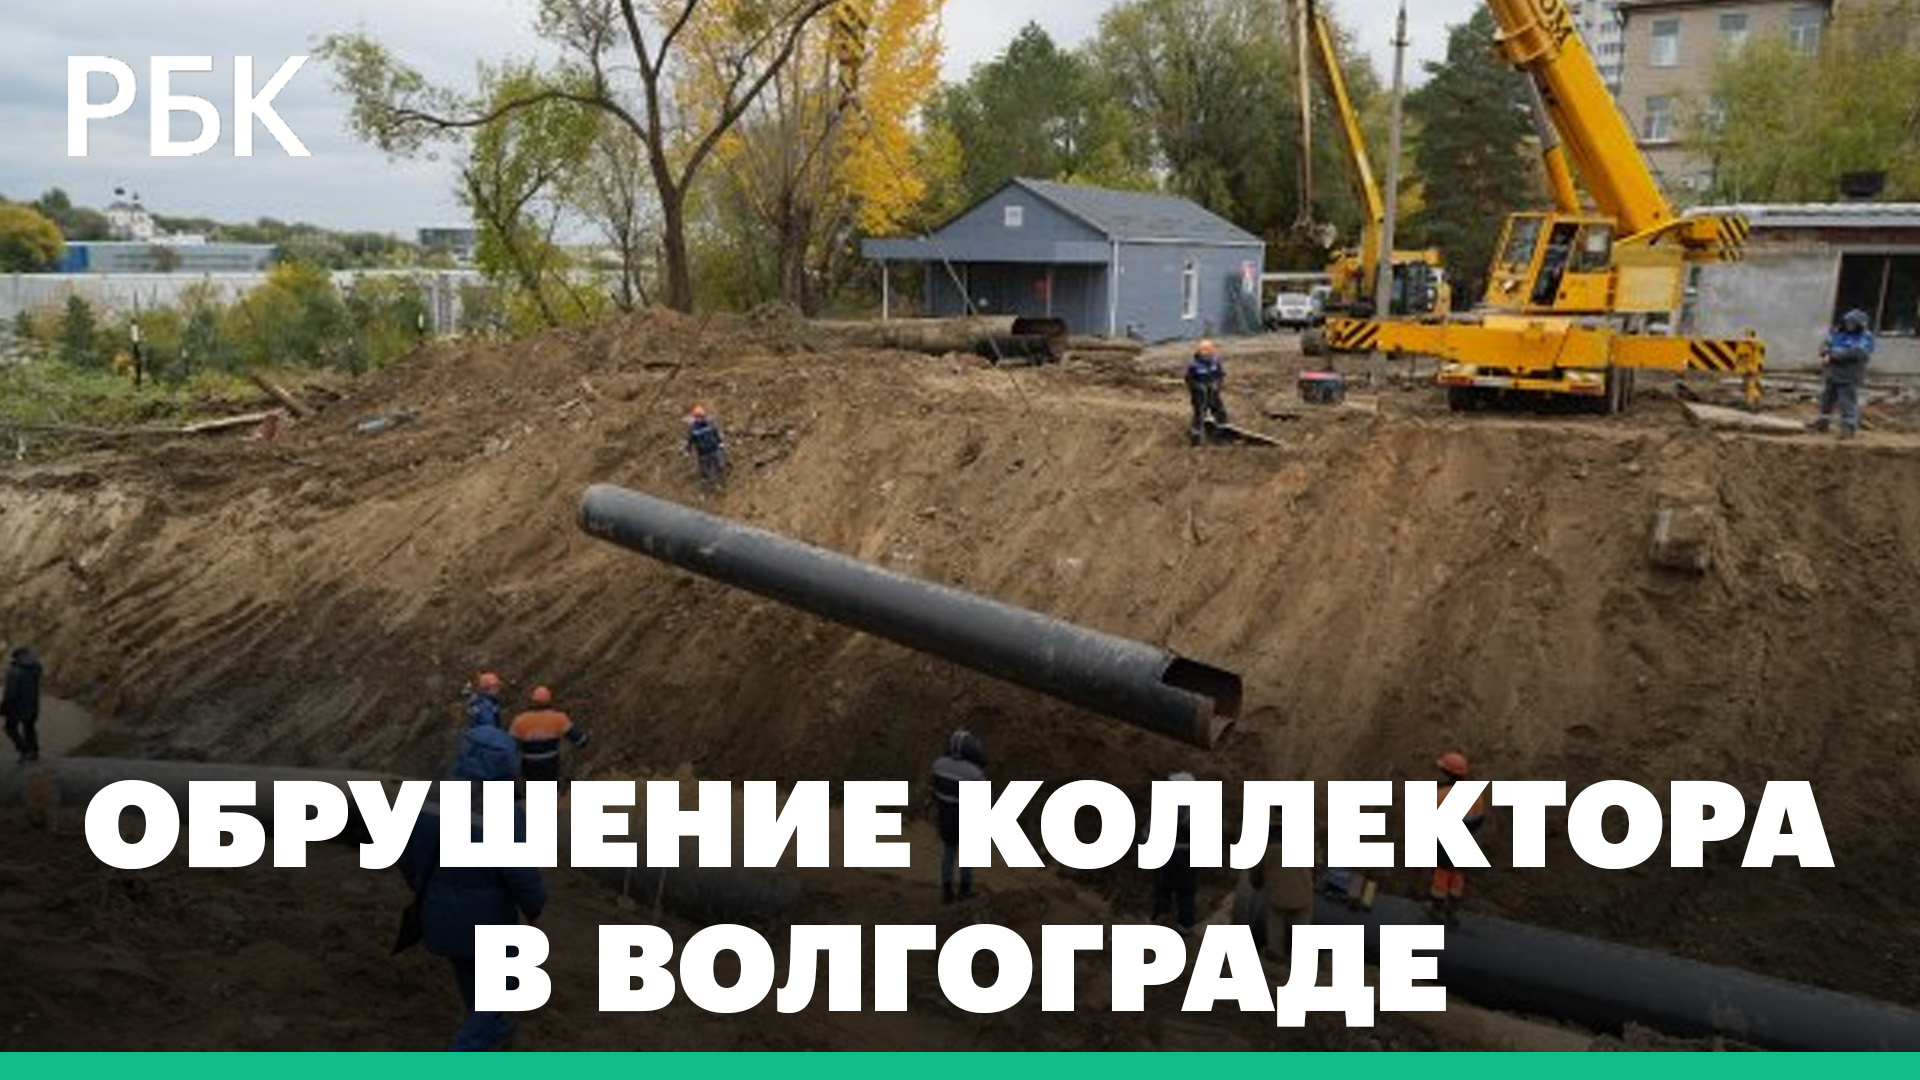 Обрушение коллектора в Волгограде: возможные последствия для экологии